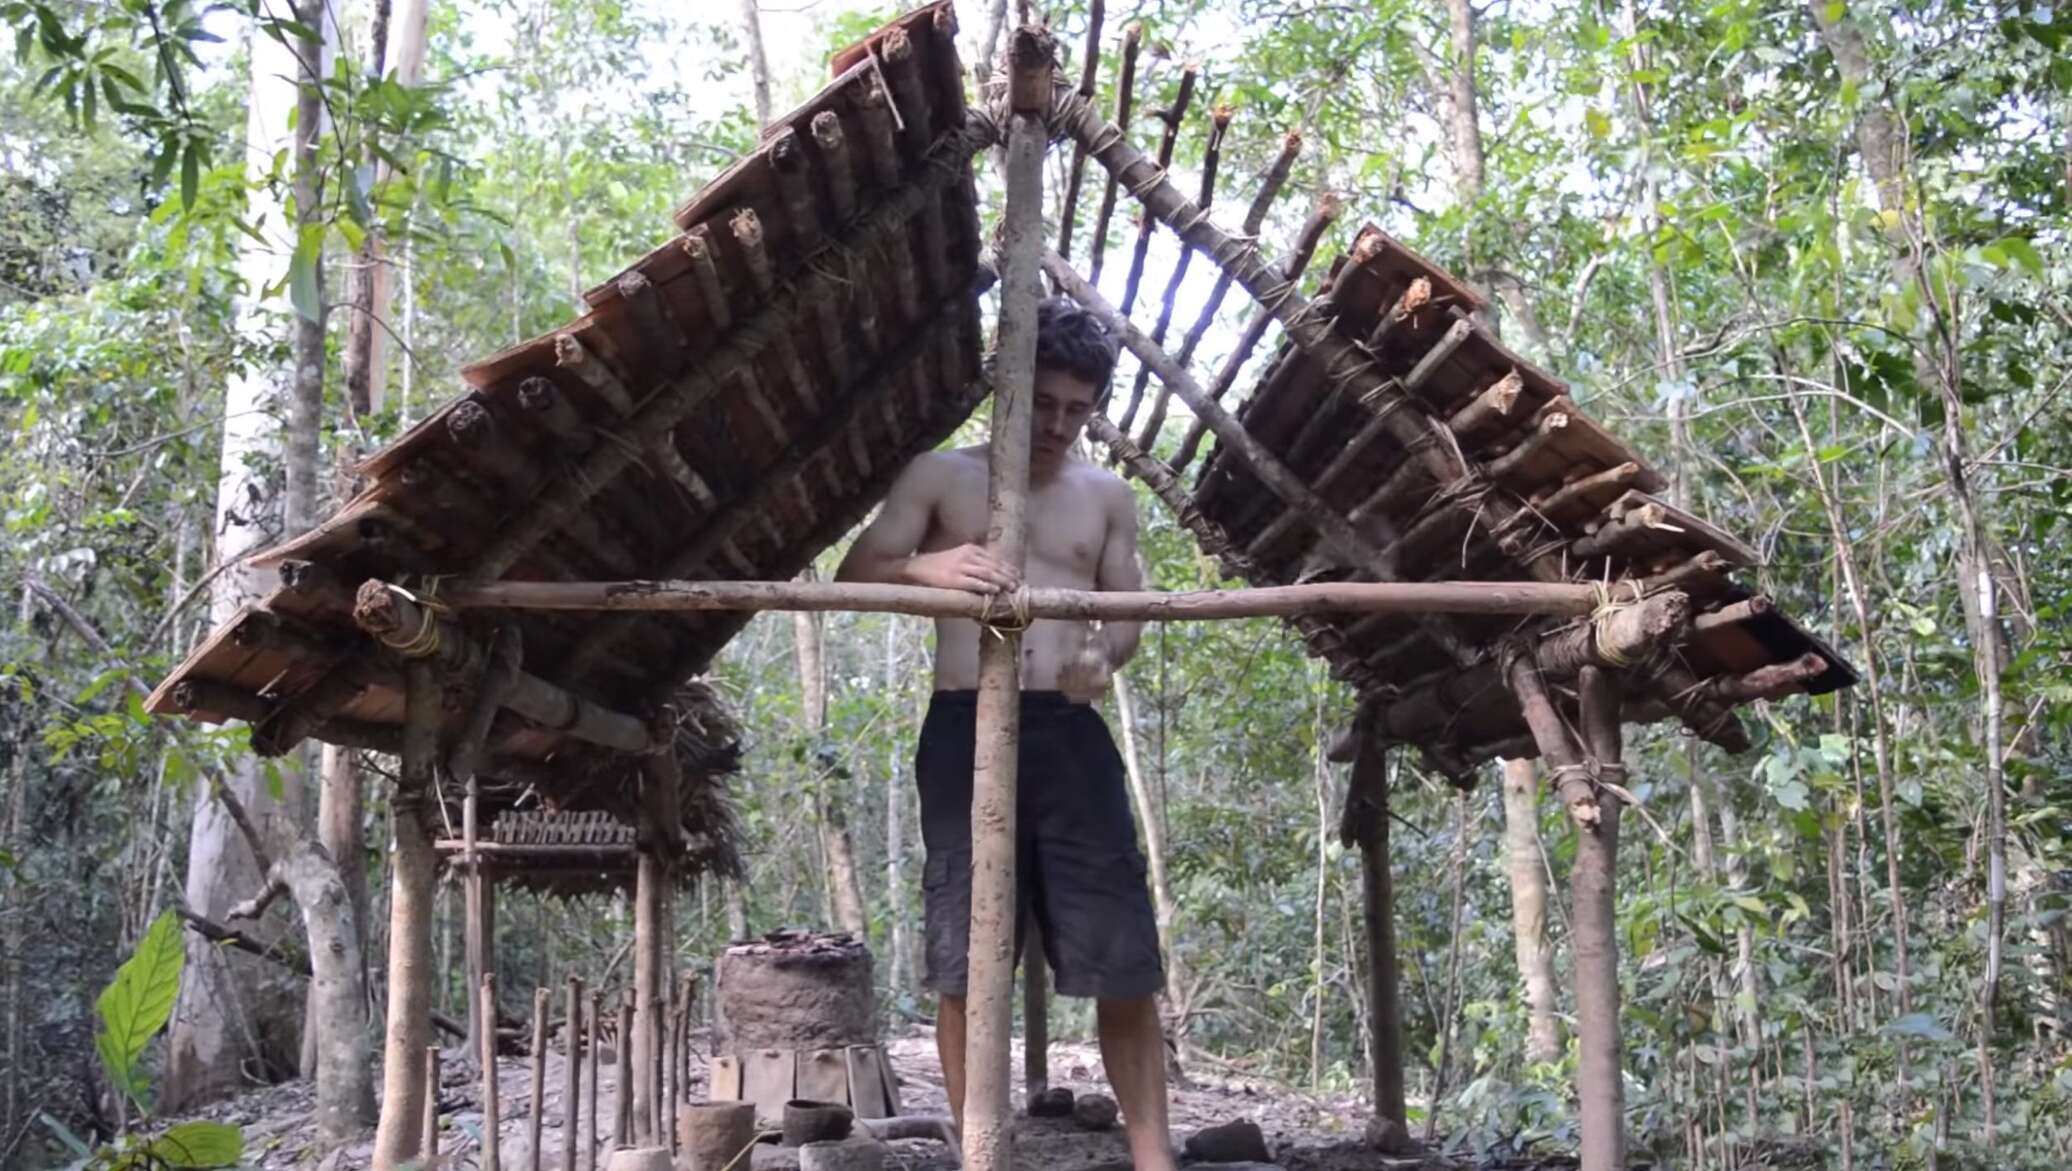 Чувак строит дом в лесу